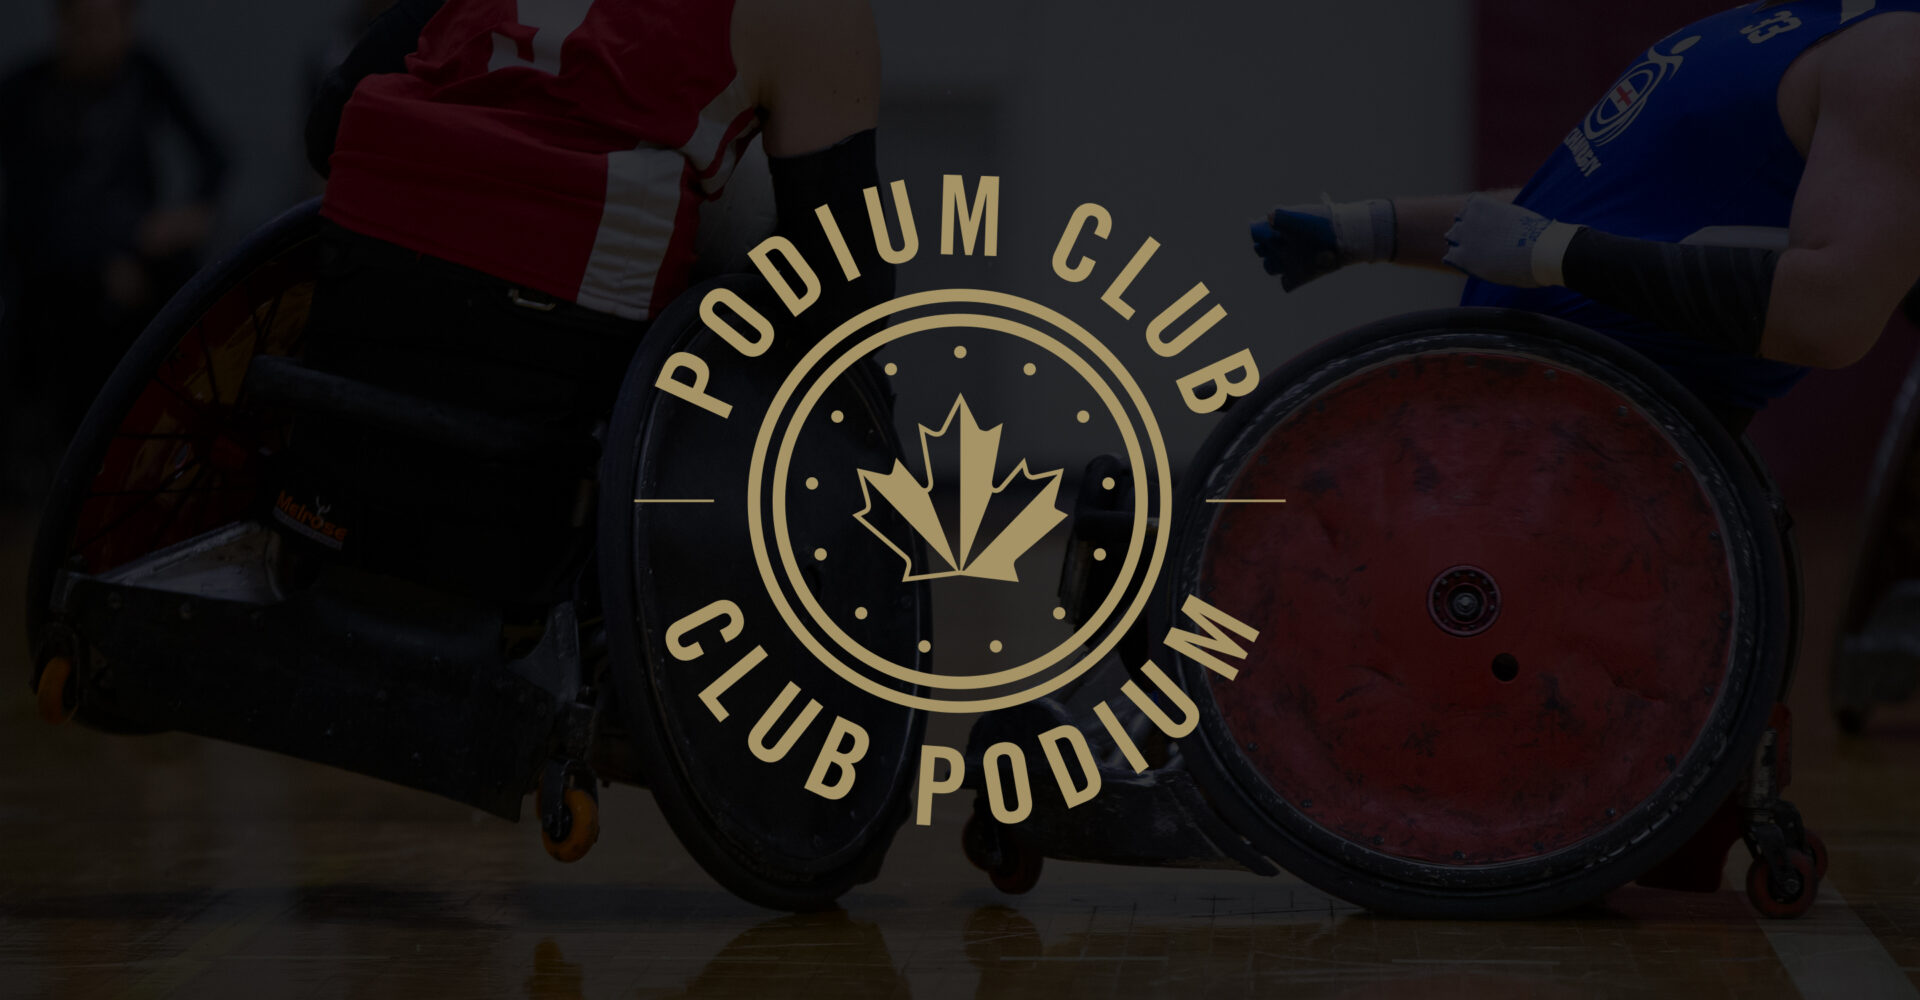 Podium Club